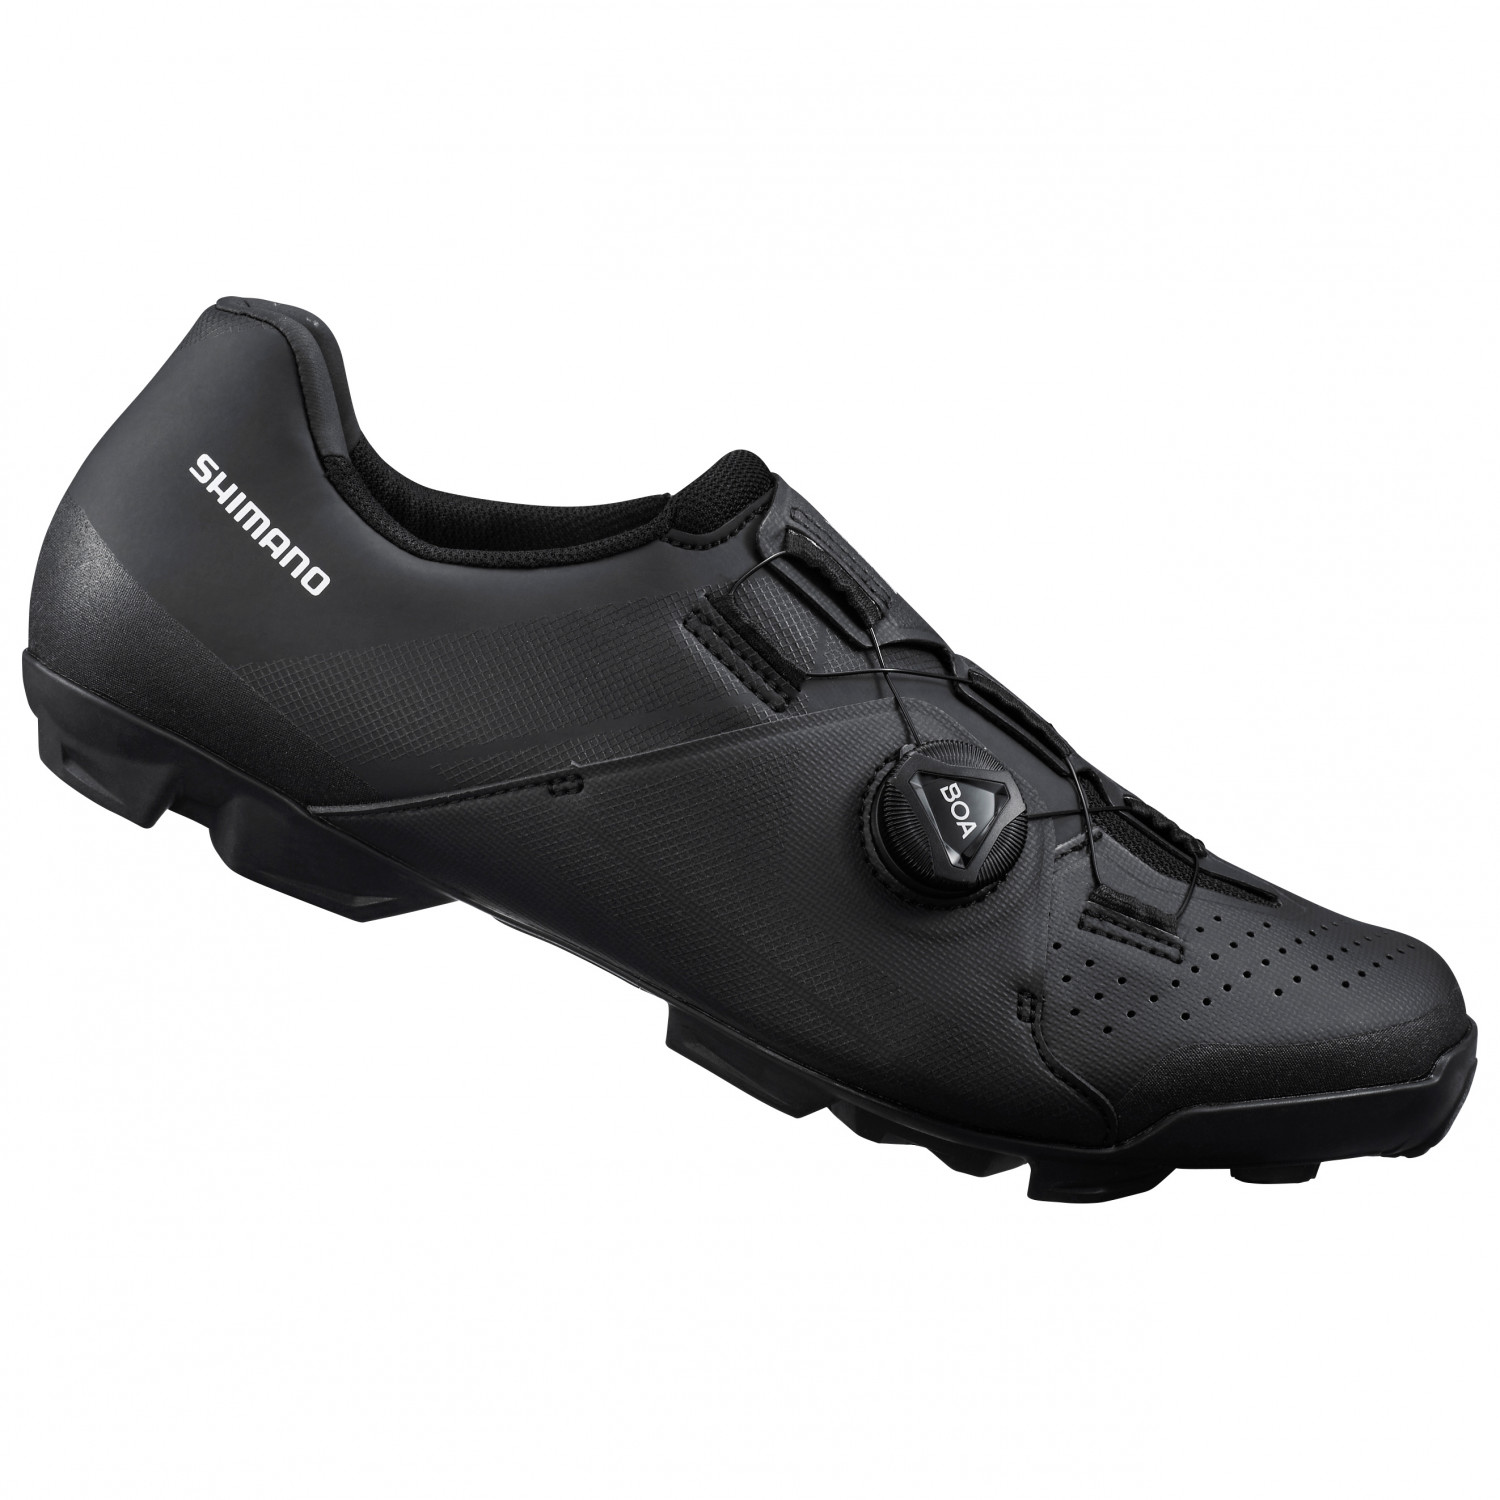 Велосипедная обувь Shimano SH XC3 Cross Country Schuhe, черный